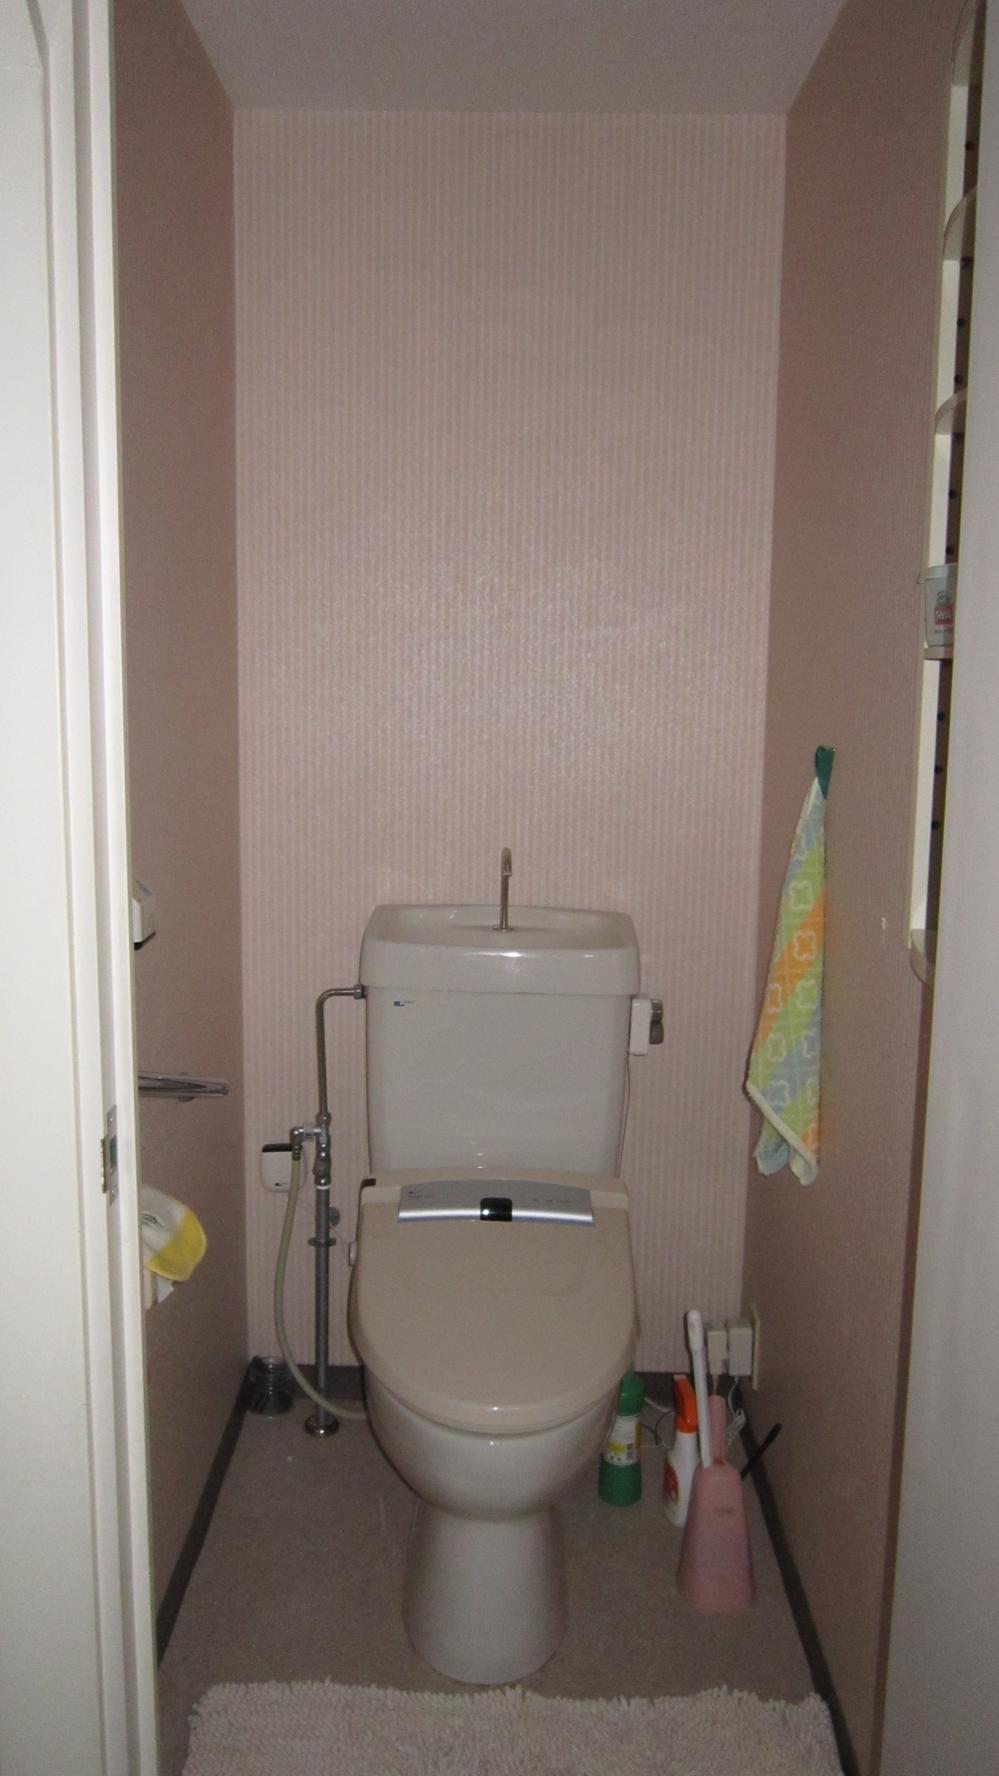 Toilet. Indoor (March 2013) Shooting